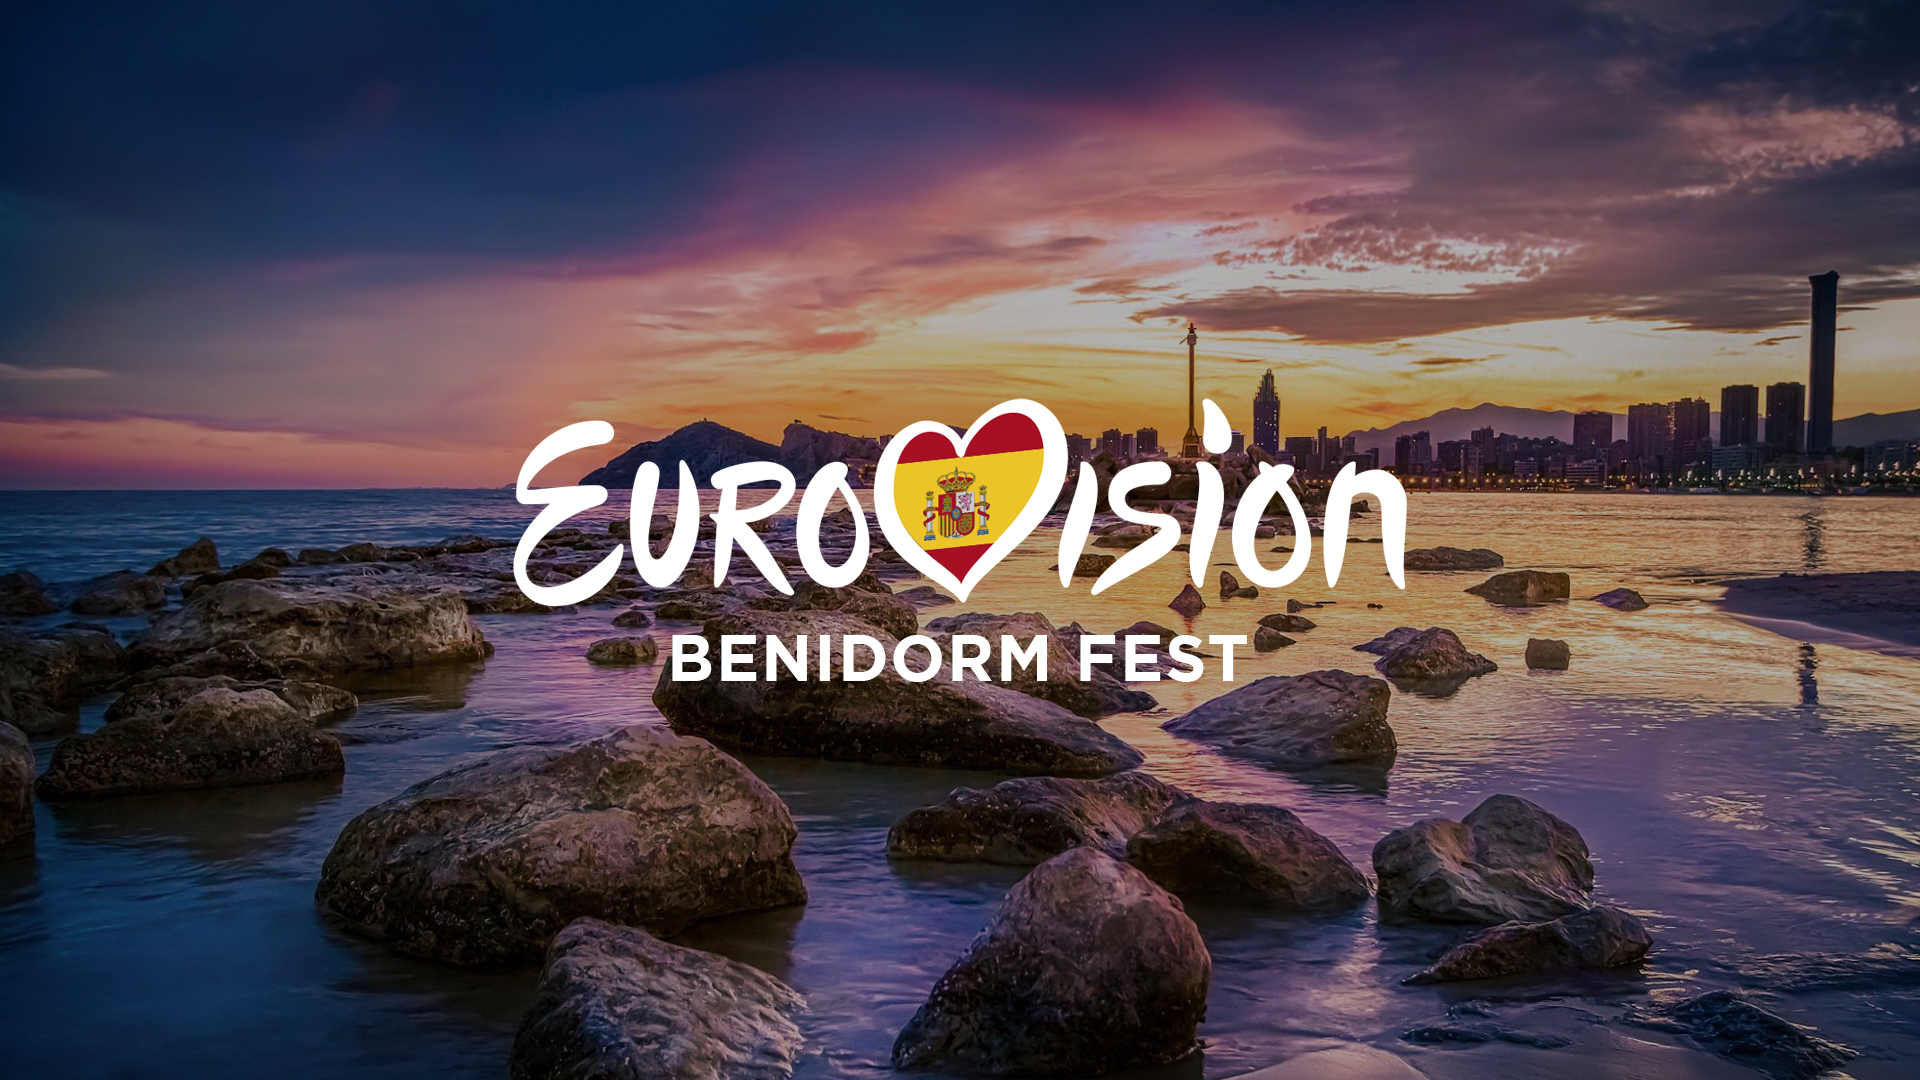 El Palau L'Illa de Benidorm se perfila como favorito para acoger la primera edición del Benidorm Fest